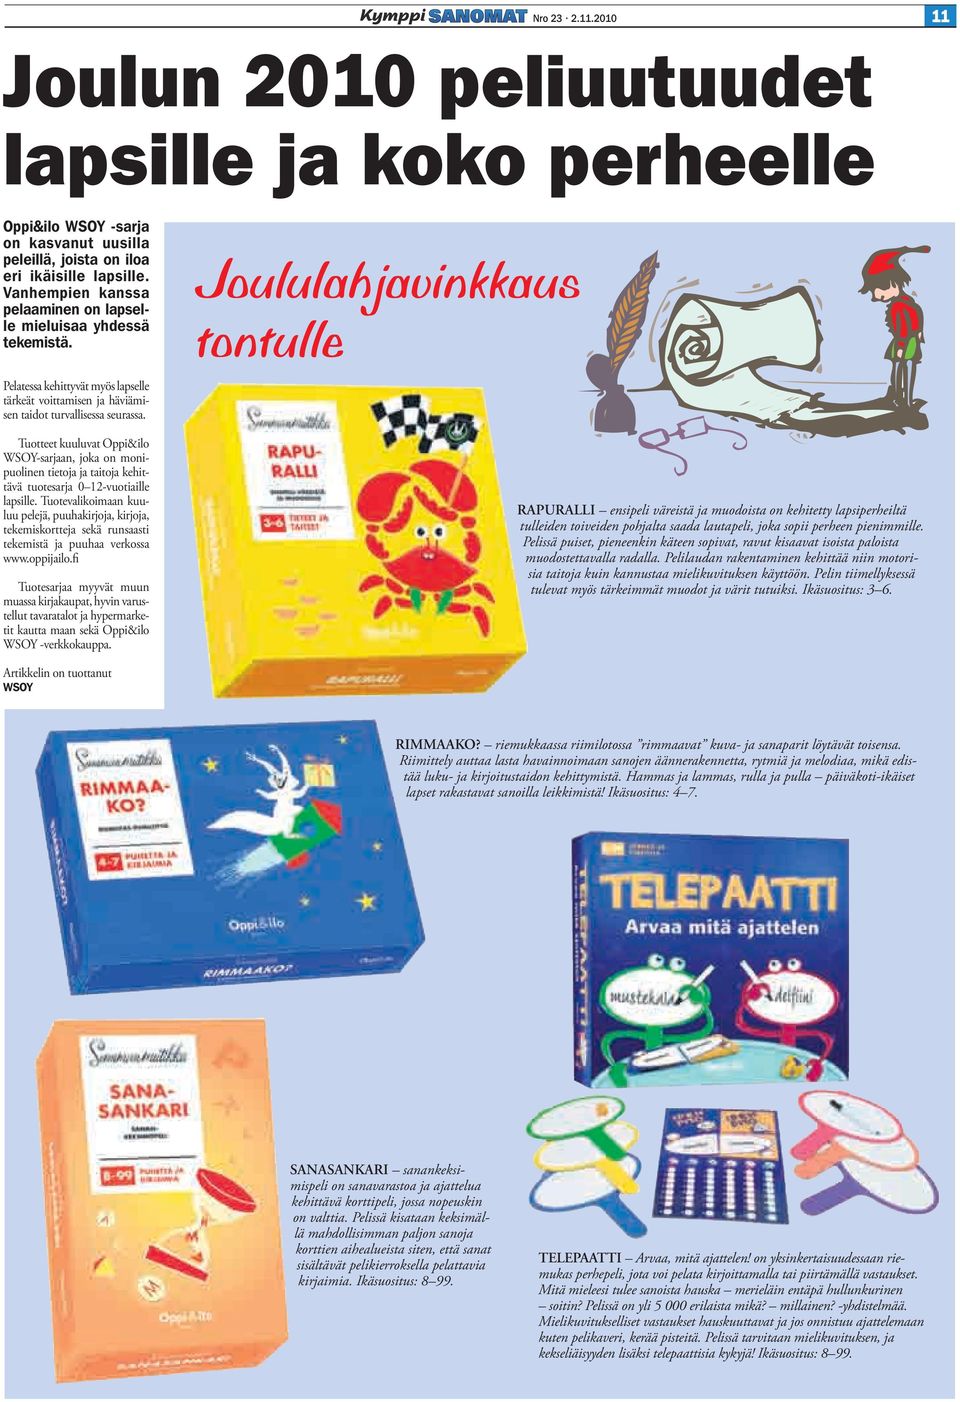 Tuotteet kuuluvat Oppi&ilo WSOY-sarjaan, joka on monipuolinen tietoja ja taitoja kehittävä tuotesarja 0 12-vuotiaille lapsille.